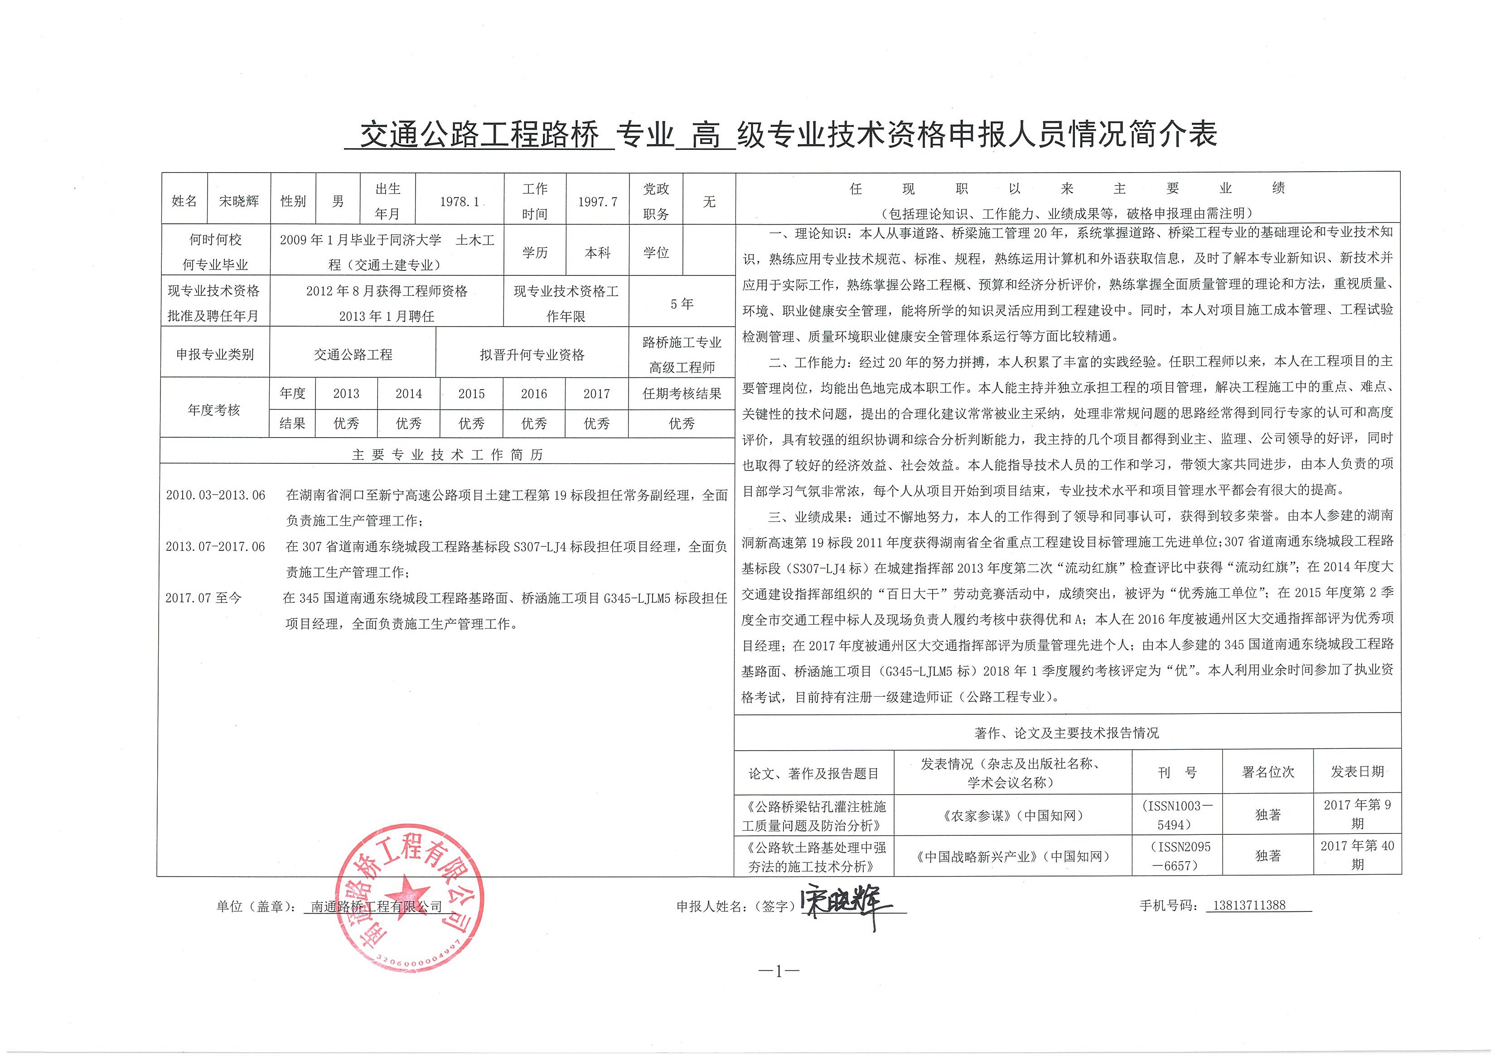 关于宋晓辉同志申报高级专业技术资格公示表